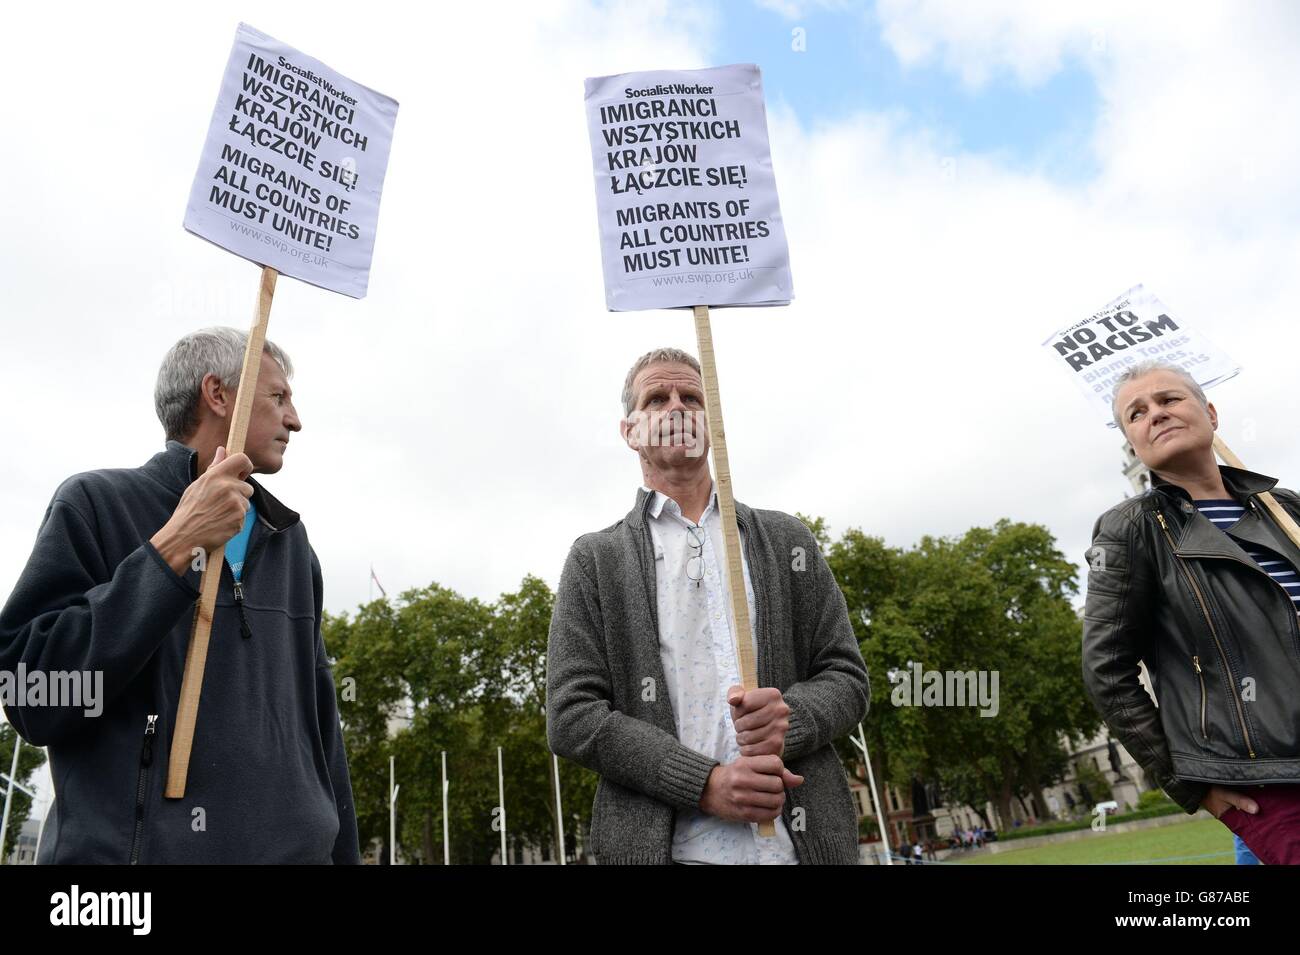 Manifestanti che sostengono i diritti dei lavoratori polacchi nel Regno Unito protestano al di fuori delle Camere del Parlamento a Westminster, Londra. Foto Stock